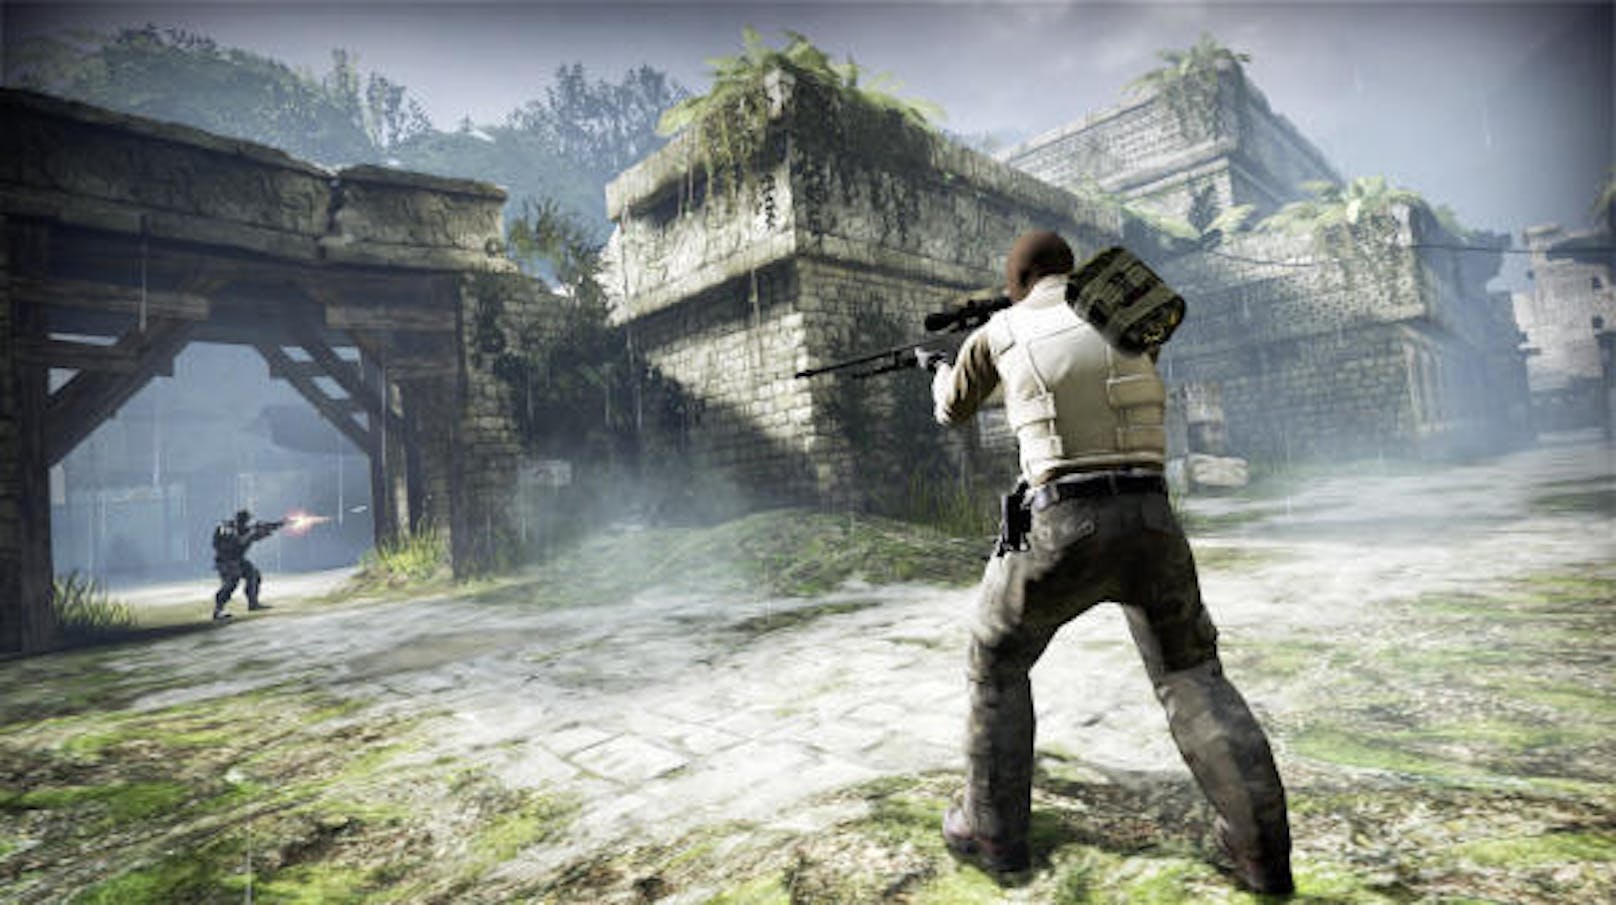 Eine größere Ankündigung gab es von Valve: Counter-Strike ist jetzt gratis. Der Shooter ist auf Steam neu Free-to-Play. Das gefällt aber nicht allen Spielern: Das Game wurde auf Steam mit negativen Reviews bombardiert, da das Spiel nun anfälliger für Cheater sei.